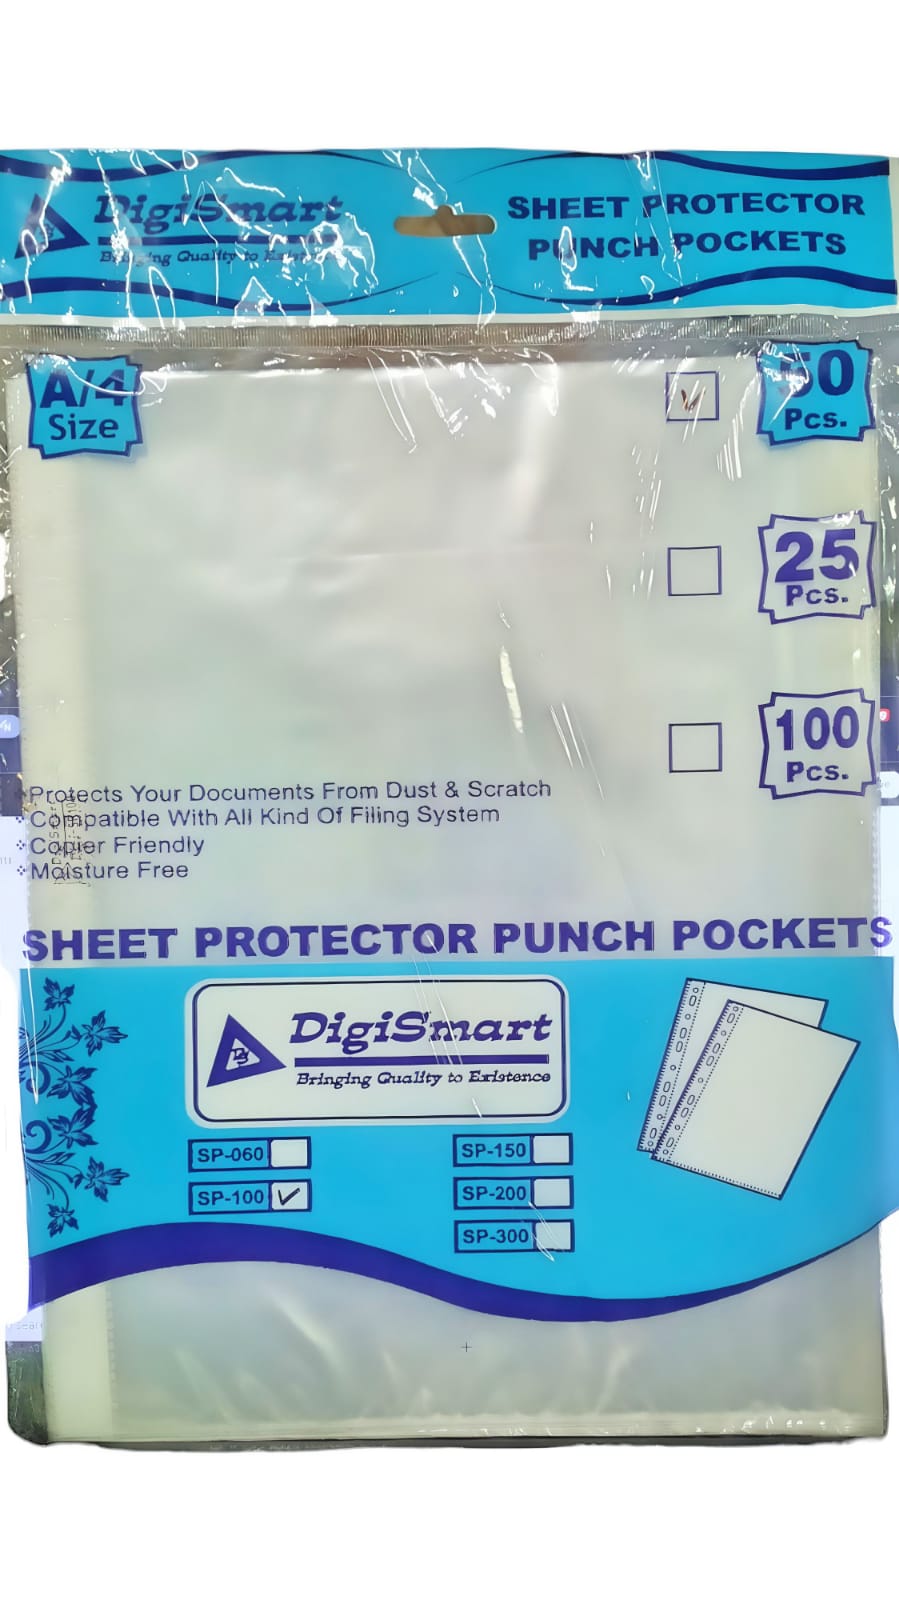 Digismart A4 Punched Pocket, 50 Pages/Pack Sheet Protector Binder Pocket Paper File Letter Sheet Protector Binder Sleeves, Clear Sheet Protector Transparent Document Pocket Folder Wallets Sleeves(Transparent)